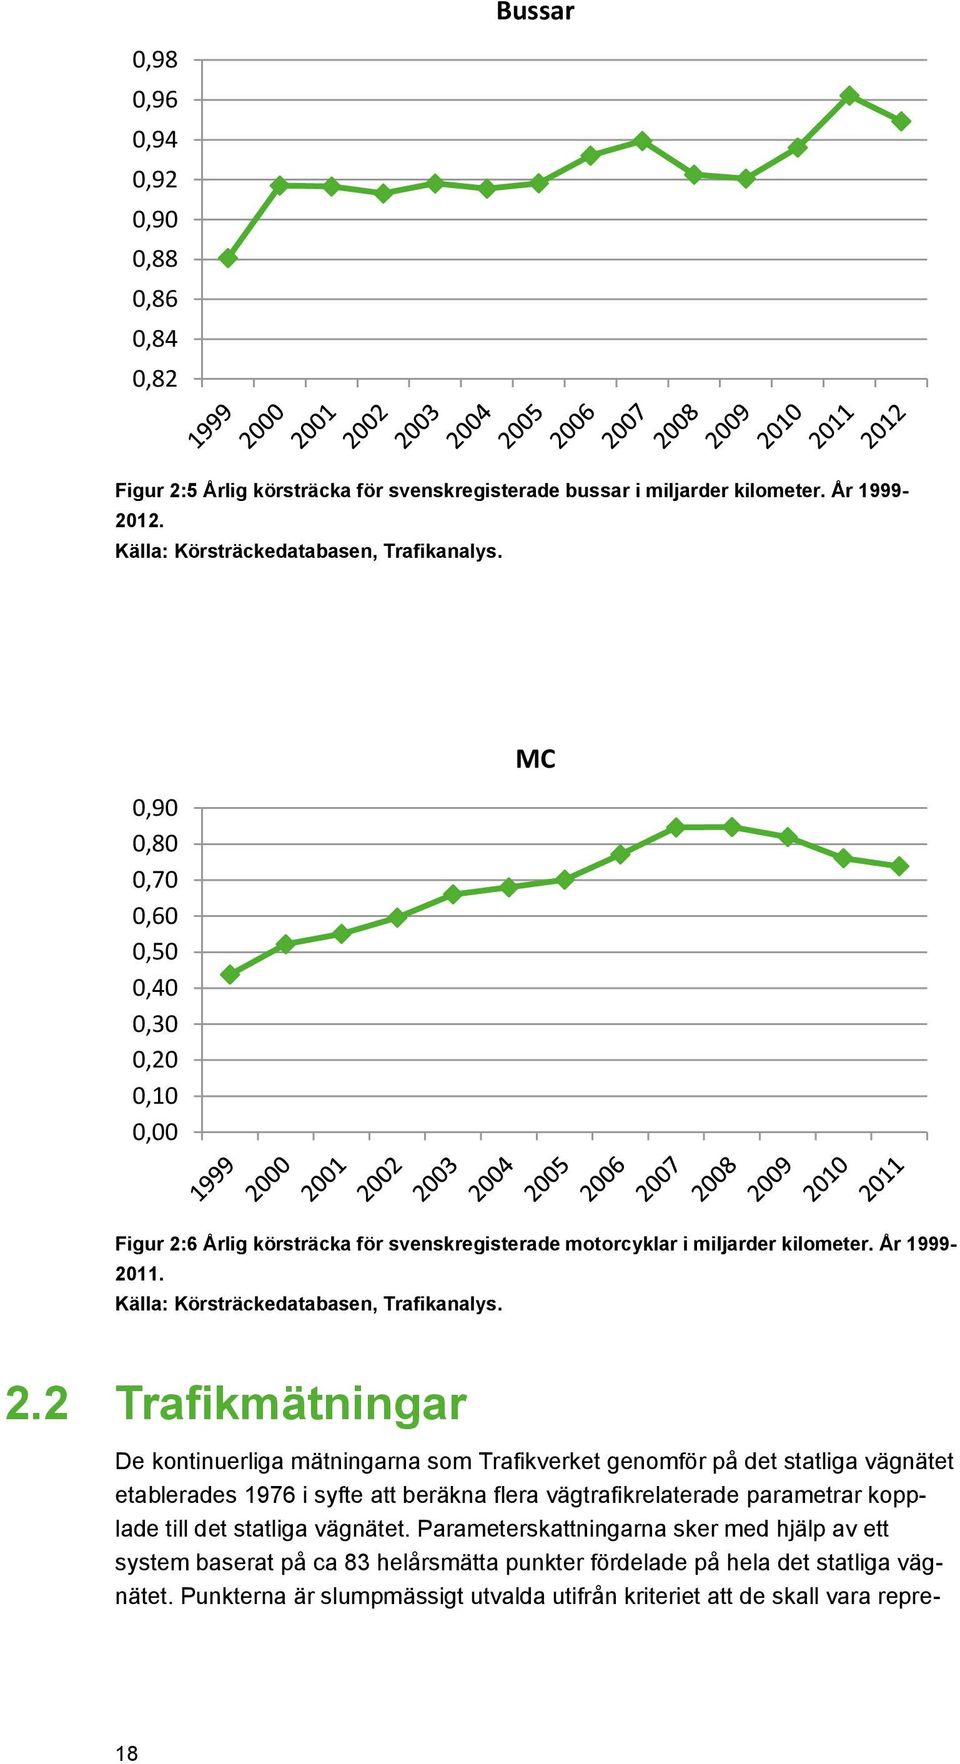 6 Årlig körsträcka för svenskregisterade motorcyklar i miljarder kilometer. År 1999-2011. Källa: Körsträckedatabasen, Trafikanalys. 2.